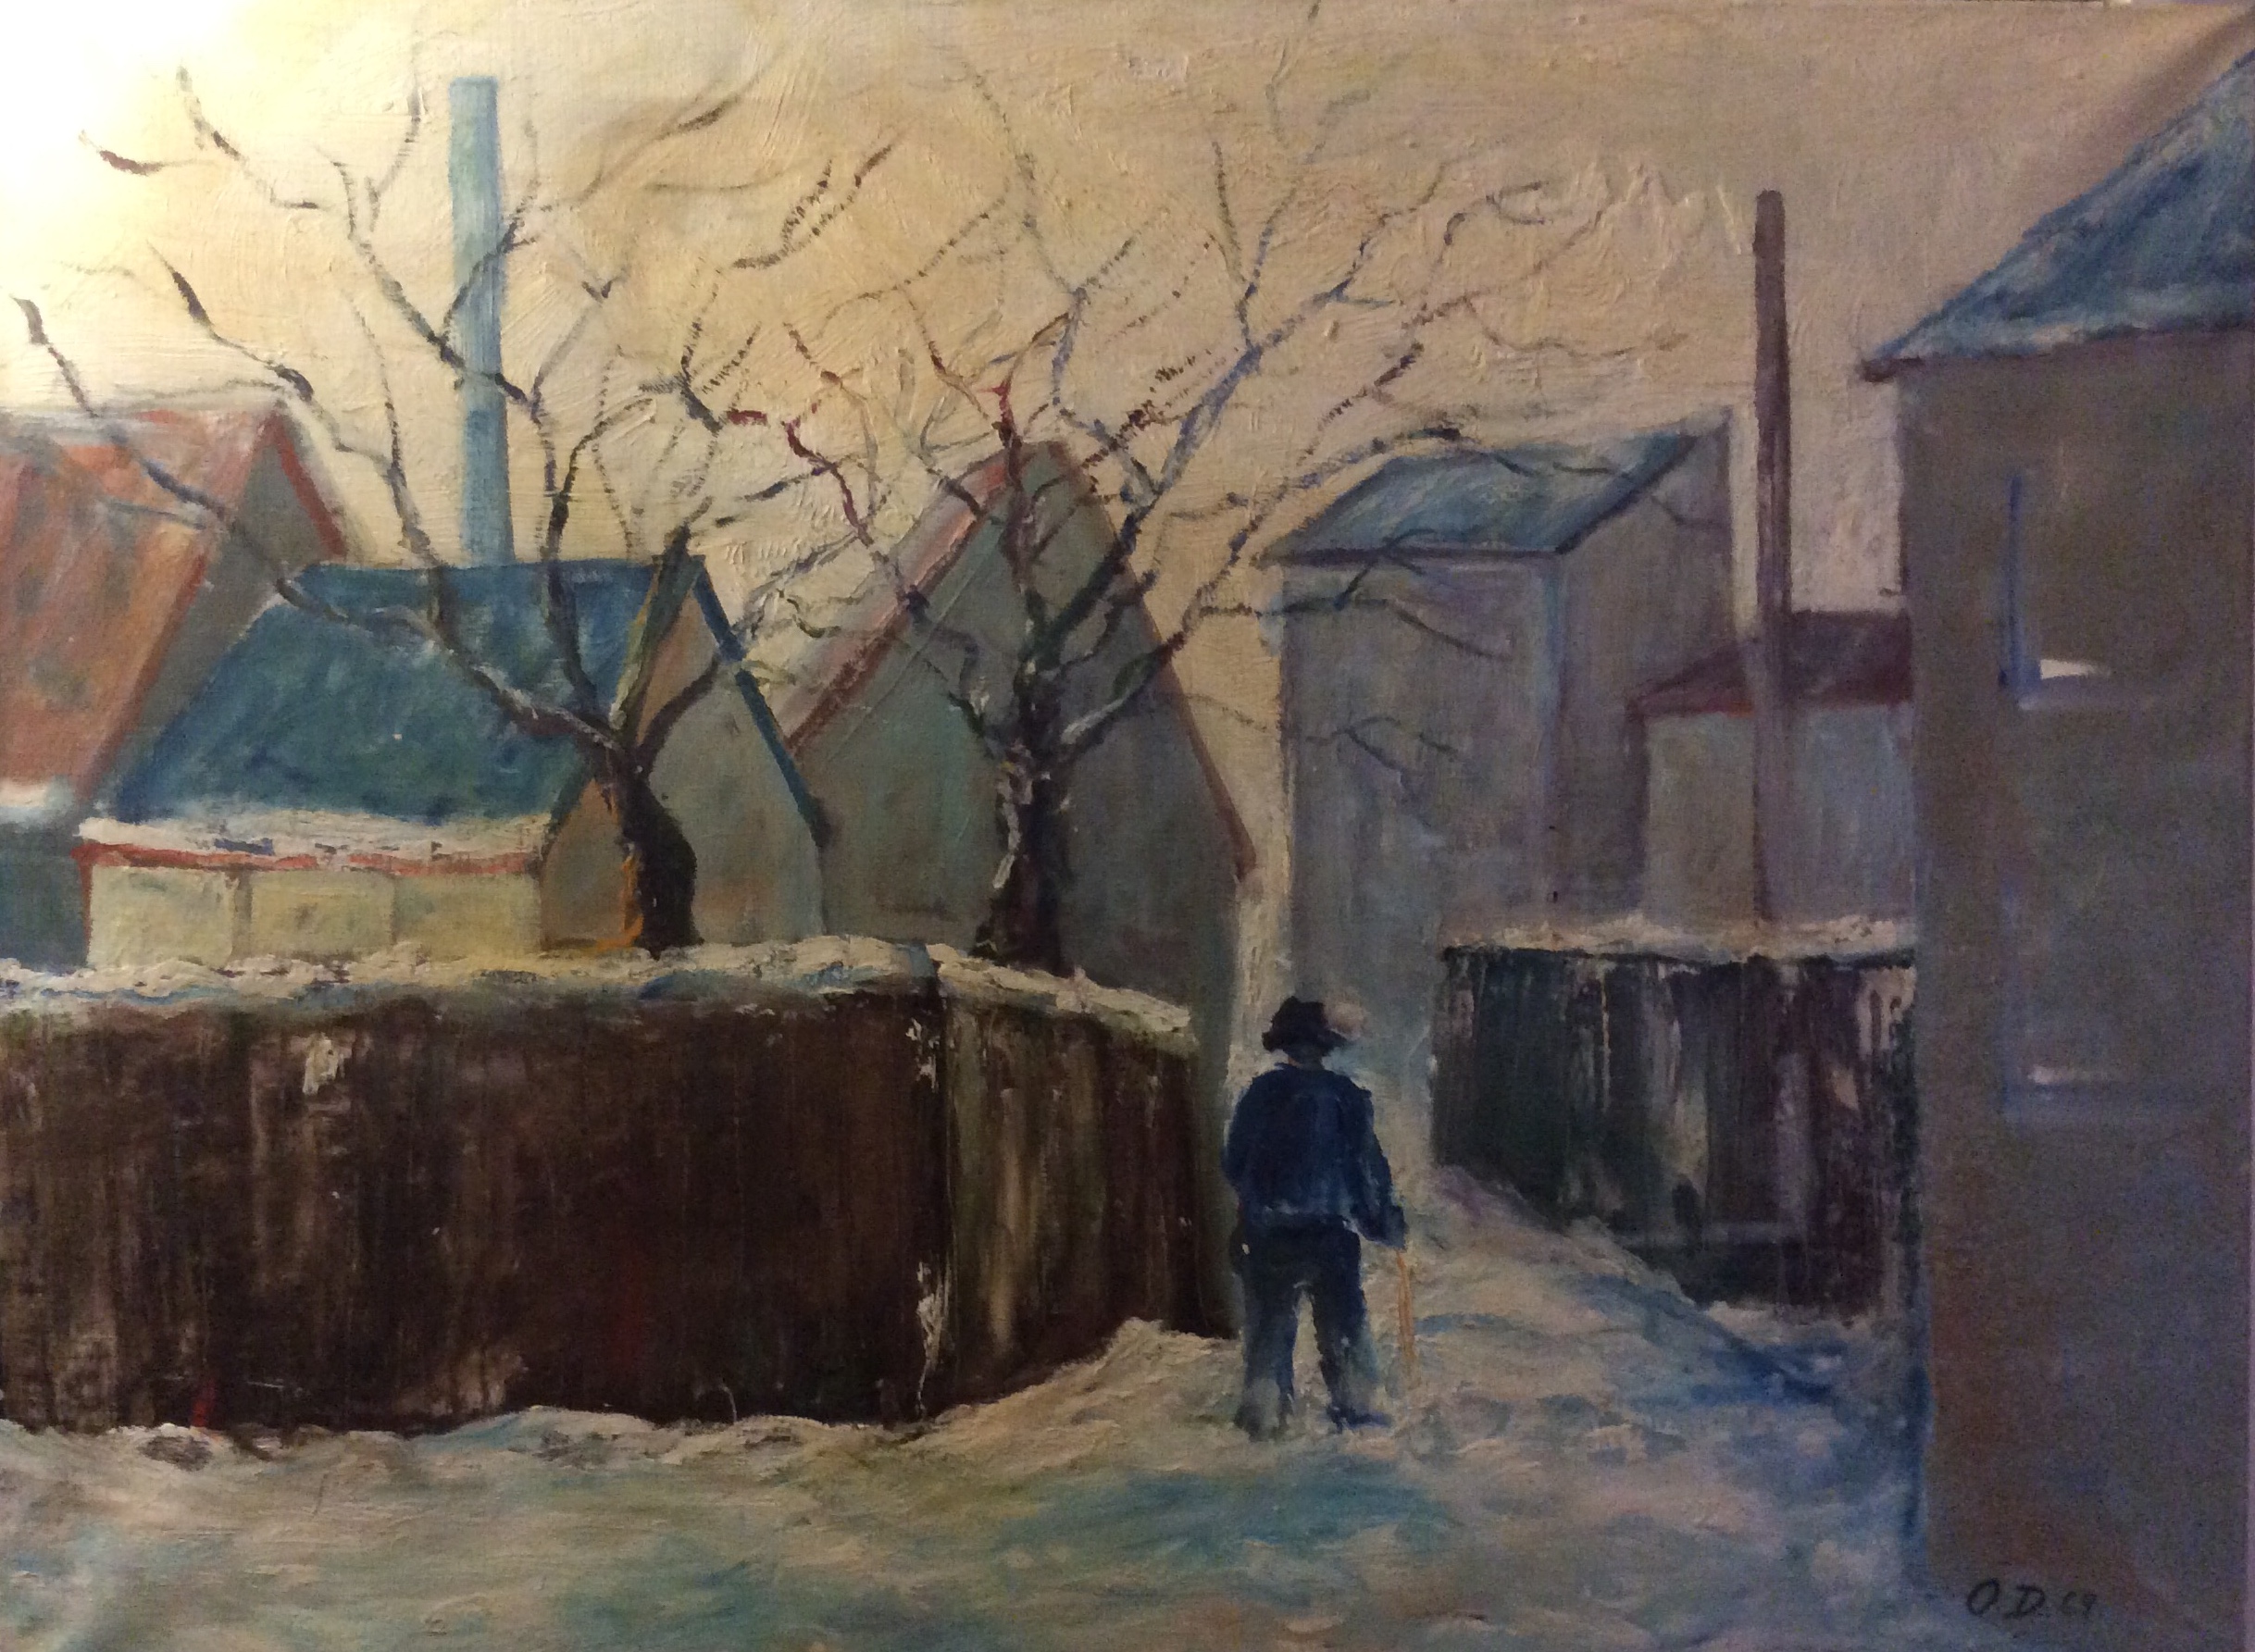 Mand i snebelagt gade, plankeværk og skorsten til venstre. Maleri. 